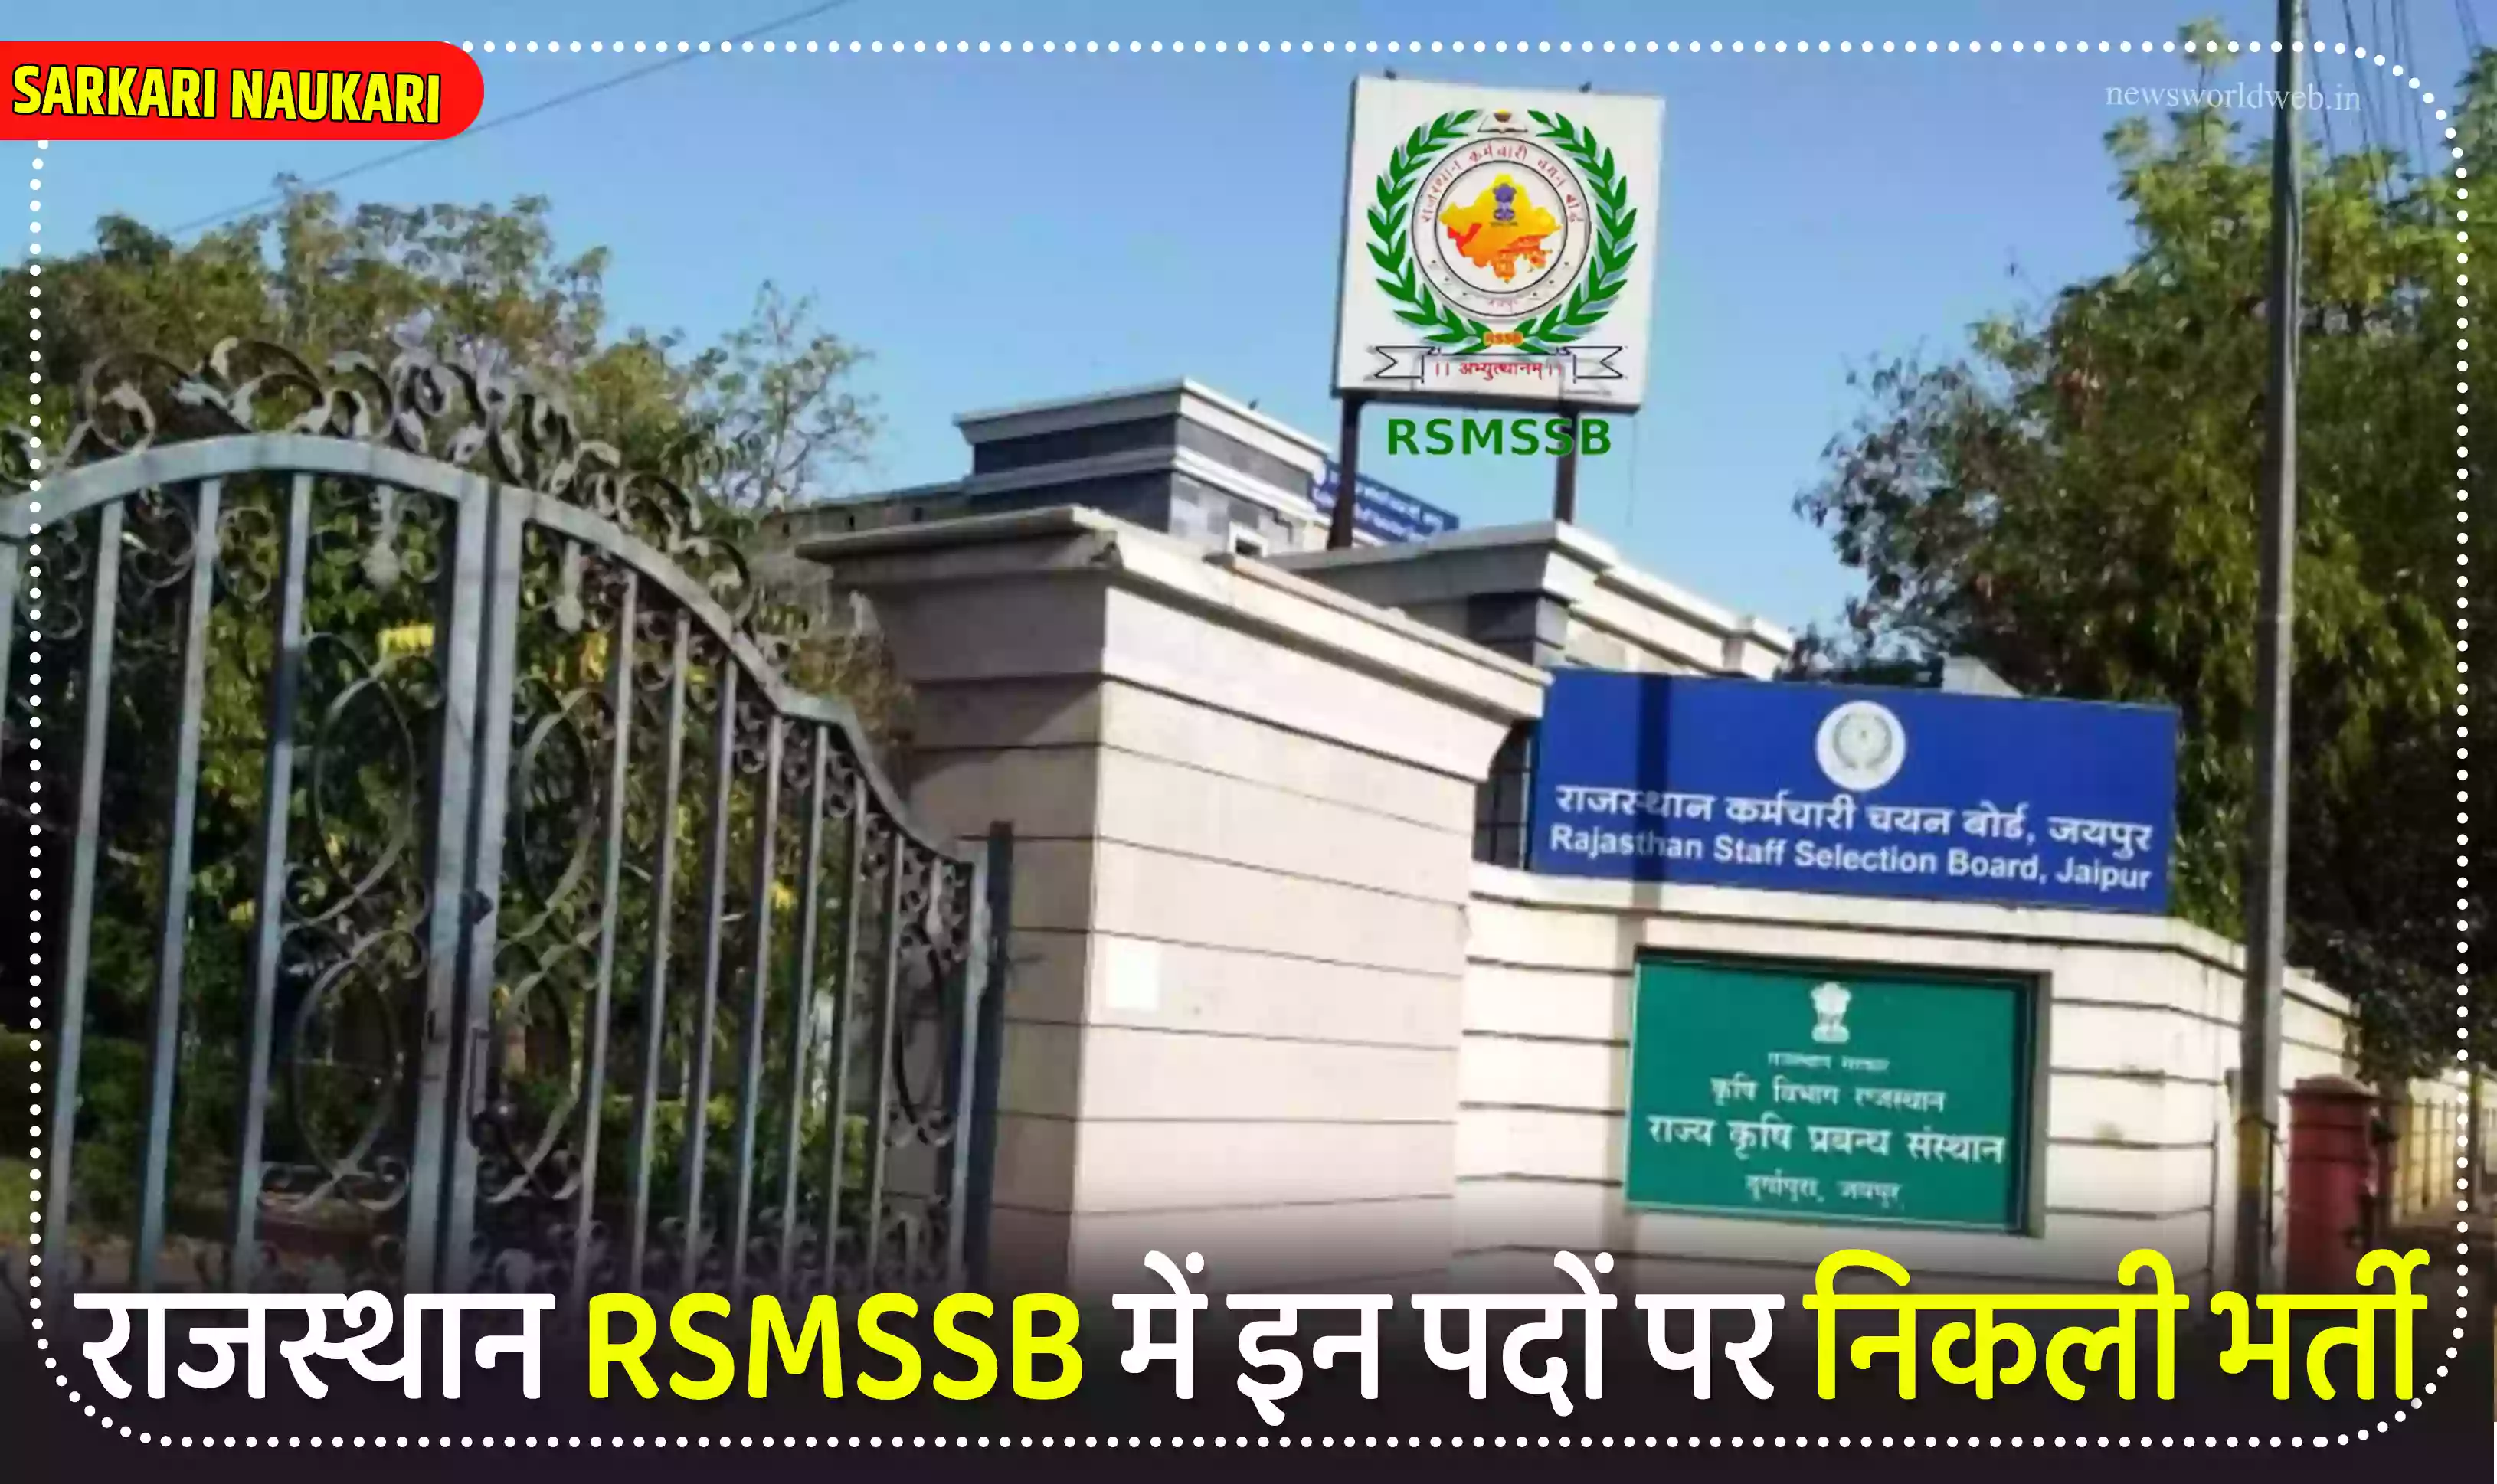 राजस्थान RSMSSB में इन पदों पर निकली भर्ती, आज से आवदेन प्रक्रिया शुरू, ऐसे भरे फॉर्म